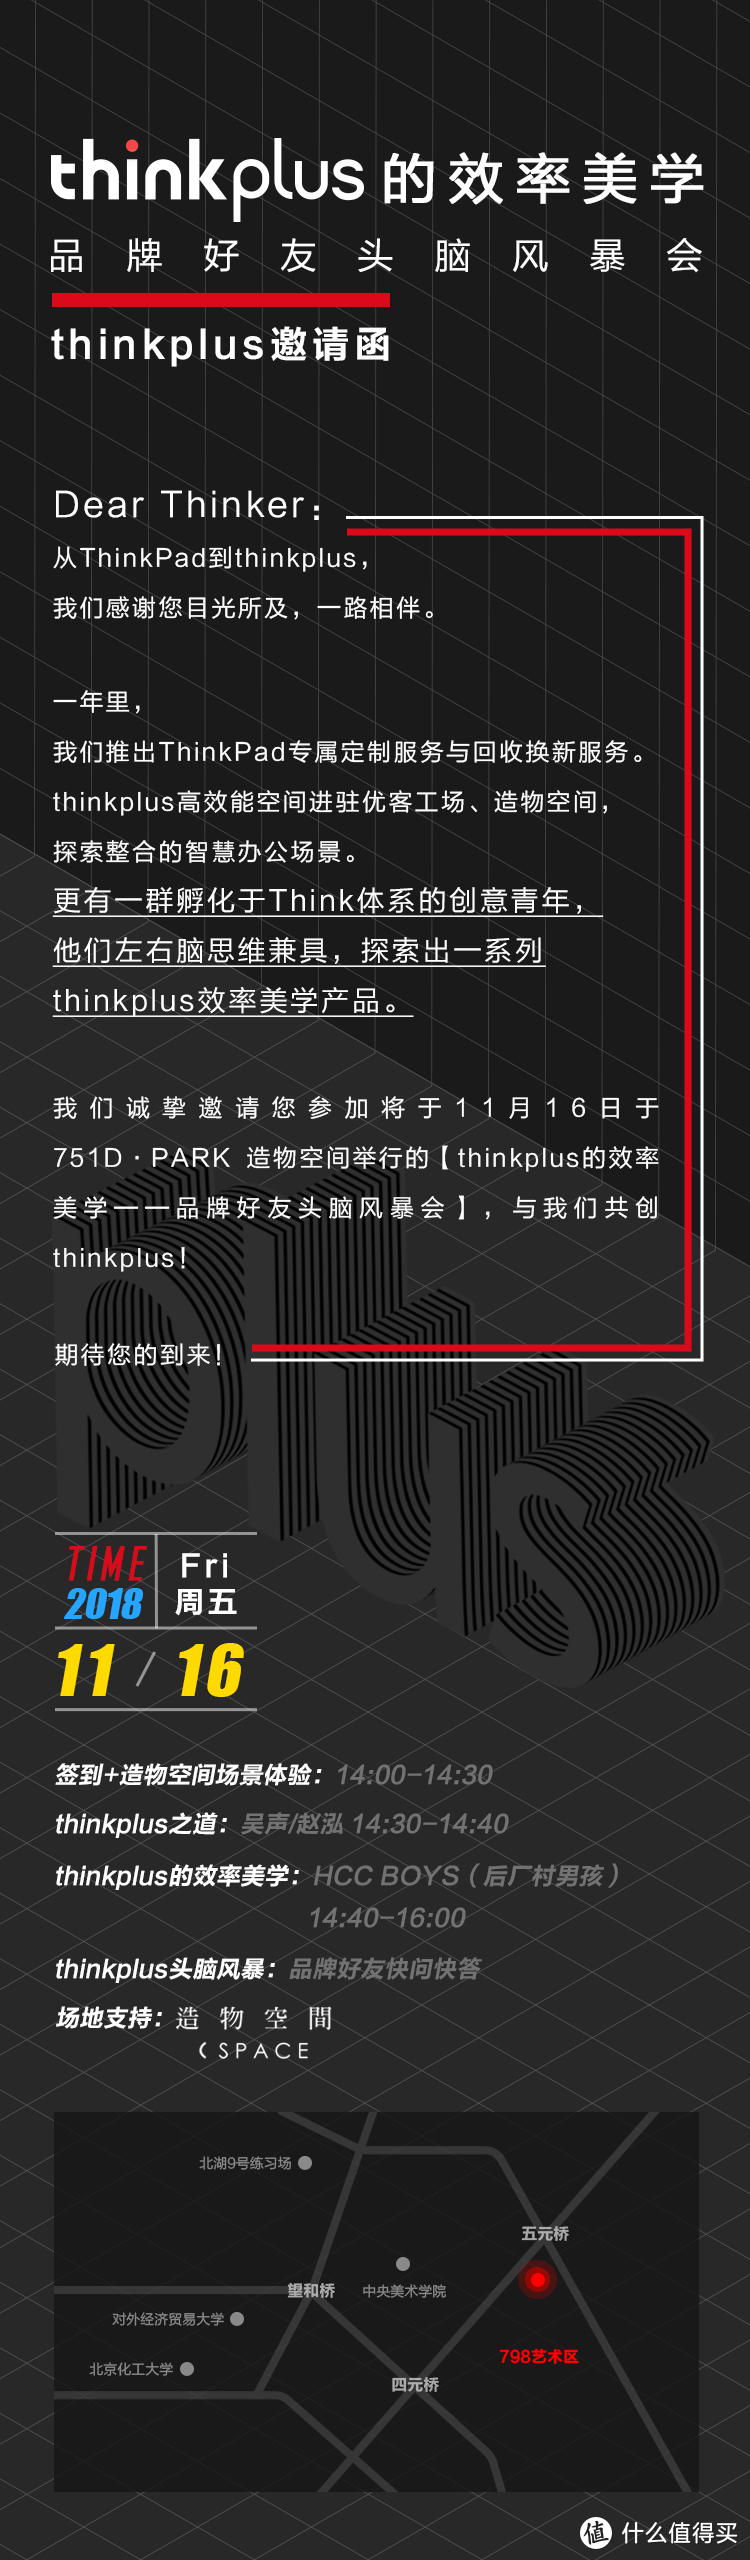 【活动预告】thinkplus品牌线下沙龙 邀北京值友体验新品